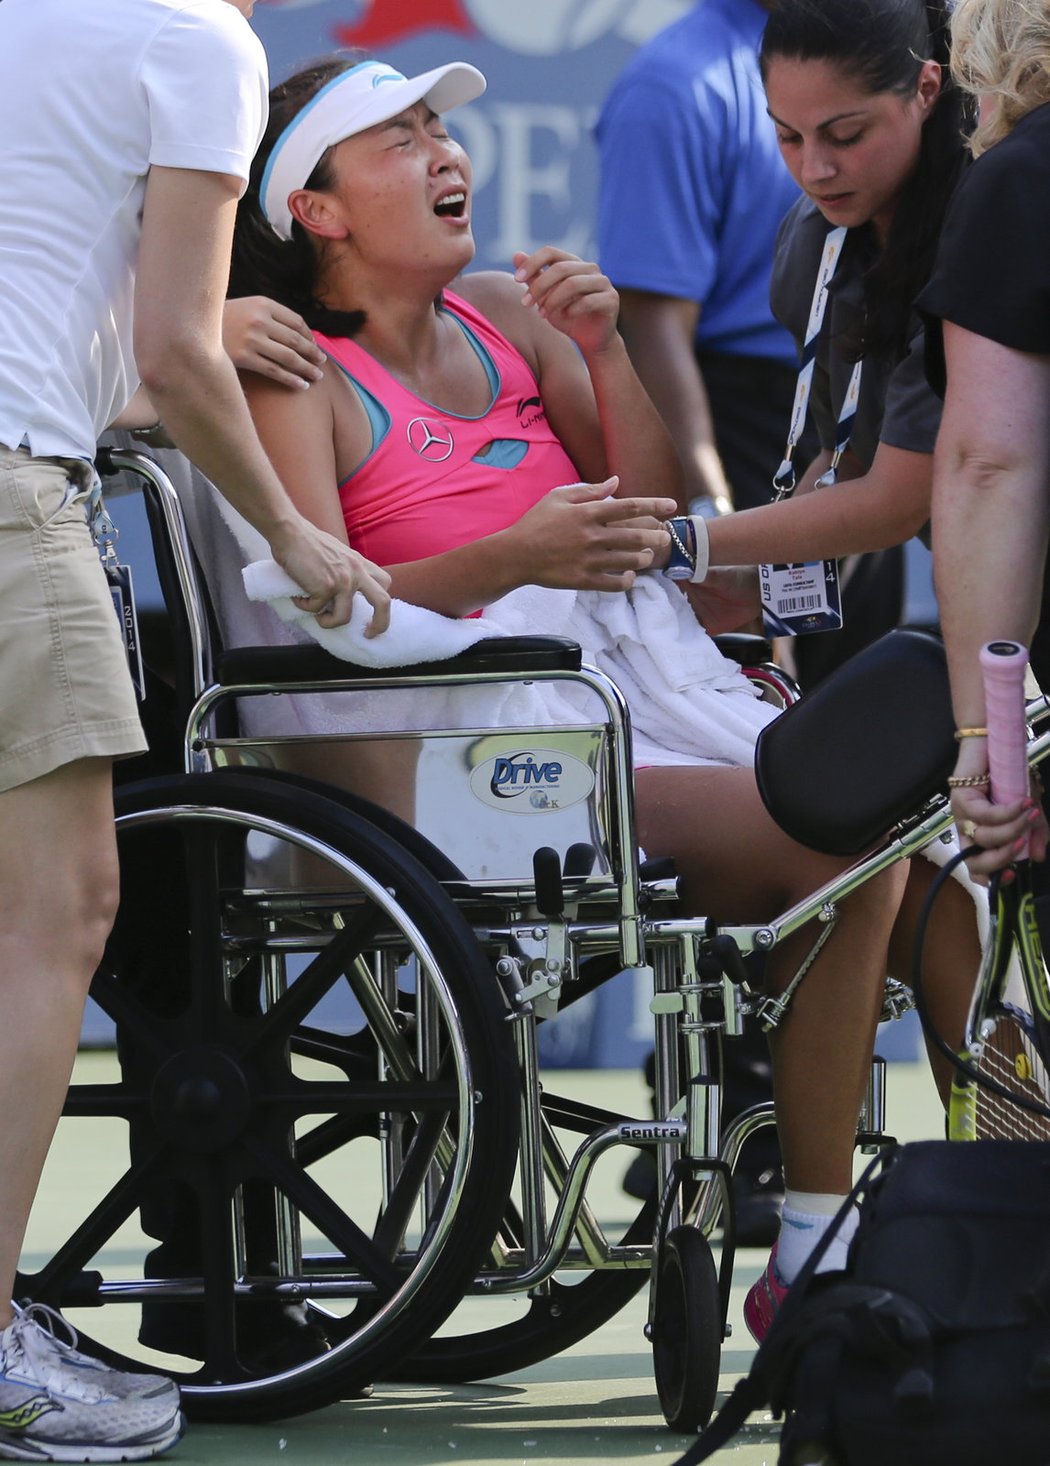 V slzách a na vozíčku opouštěla čínská tenistka Pcheng Šuaj na US Open dvorec Arthura Ashe. Tak moc toužila po finále grandslamu, že ignorovala i rady lékařů a nakonec musela kvůli křečím a vyčerpání z horka ve druhém setu vzdát semifinále US Open.